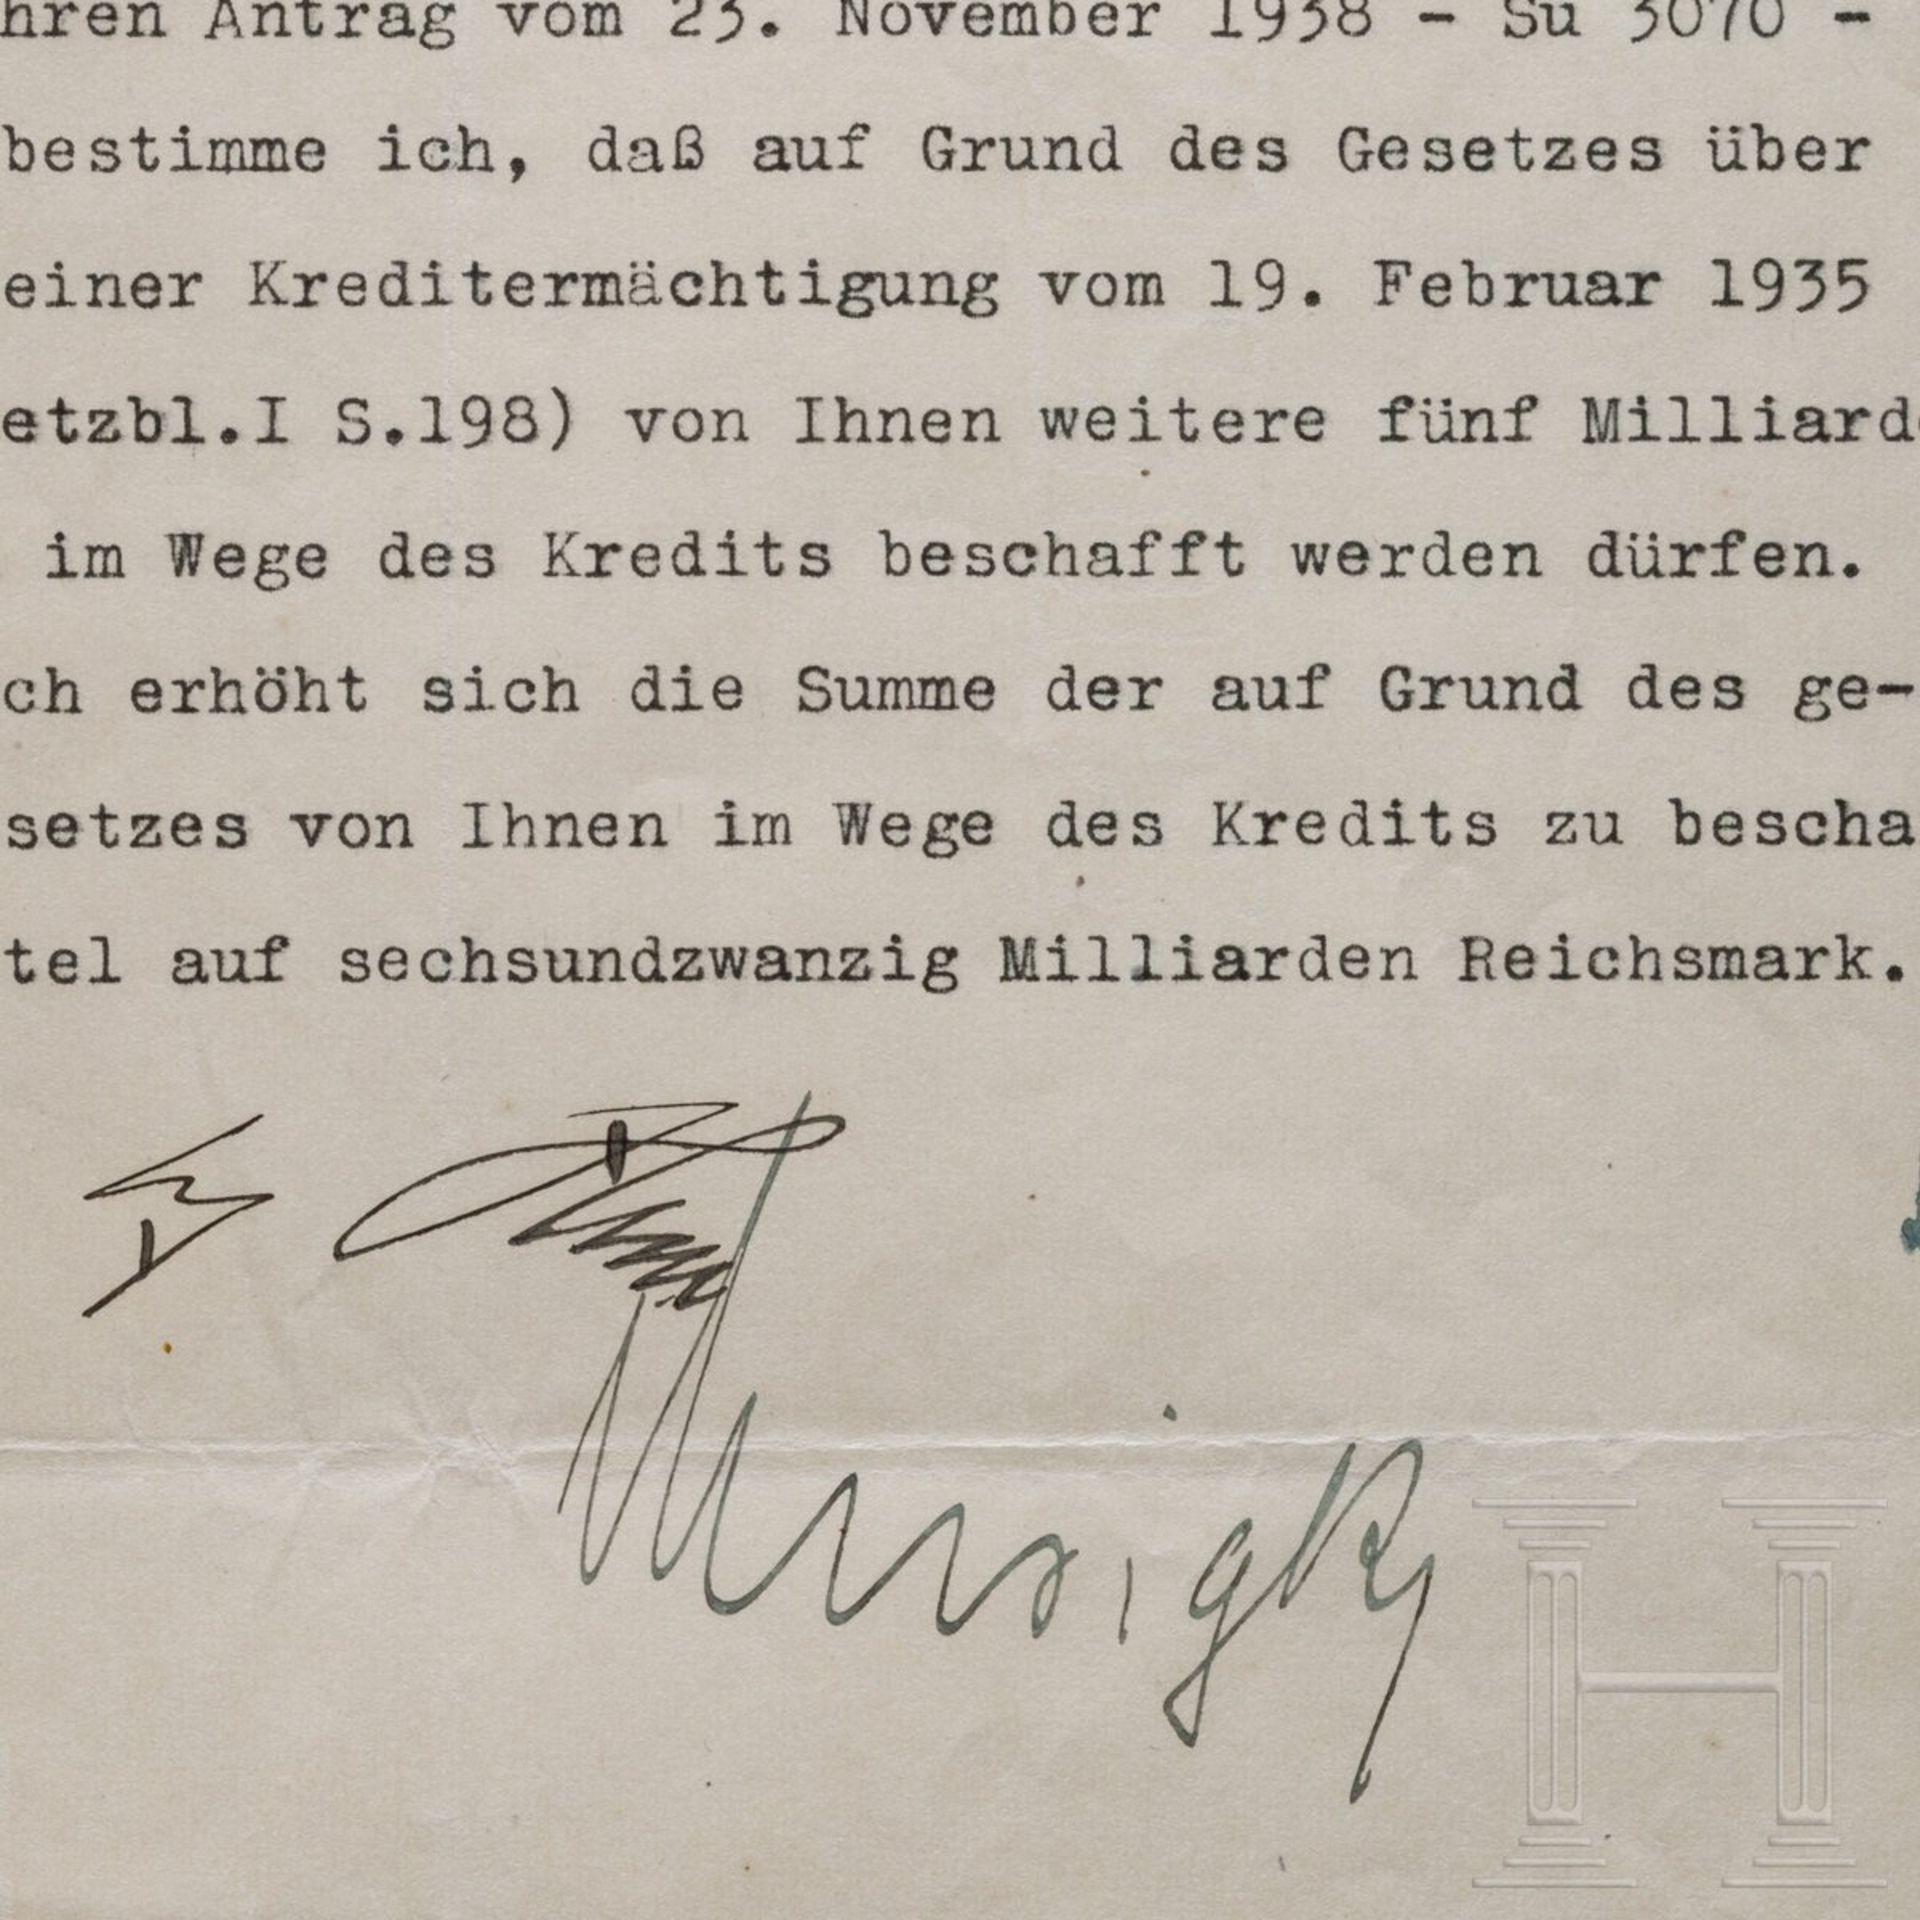 Adolf Hitler - Kreditermächtigung vom 21. Dezember 1938 mit einer Erhöhung von 21 auf 26 Milliarden - Image 2 of 3